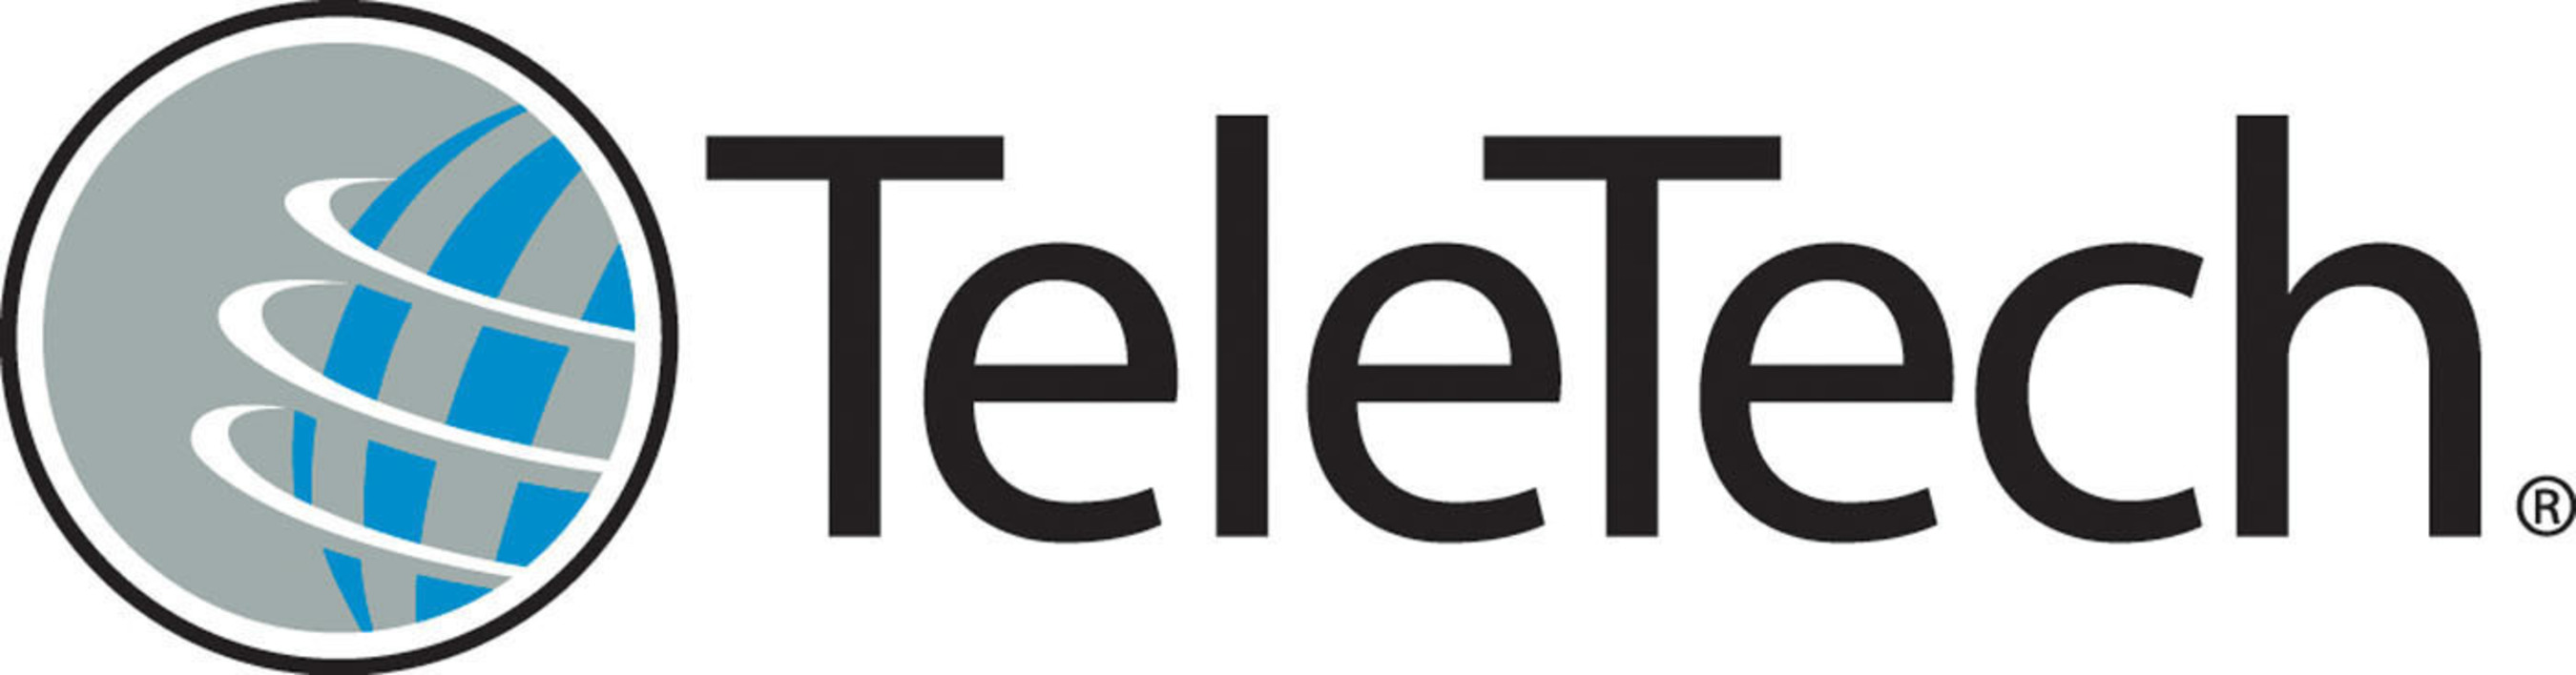 www.TeleTech.com. (PRNewsFoto/TeleTech) (PRNewsFoto/TELETECH)